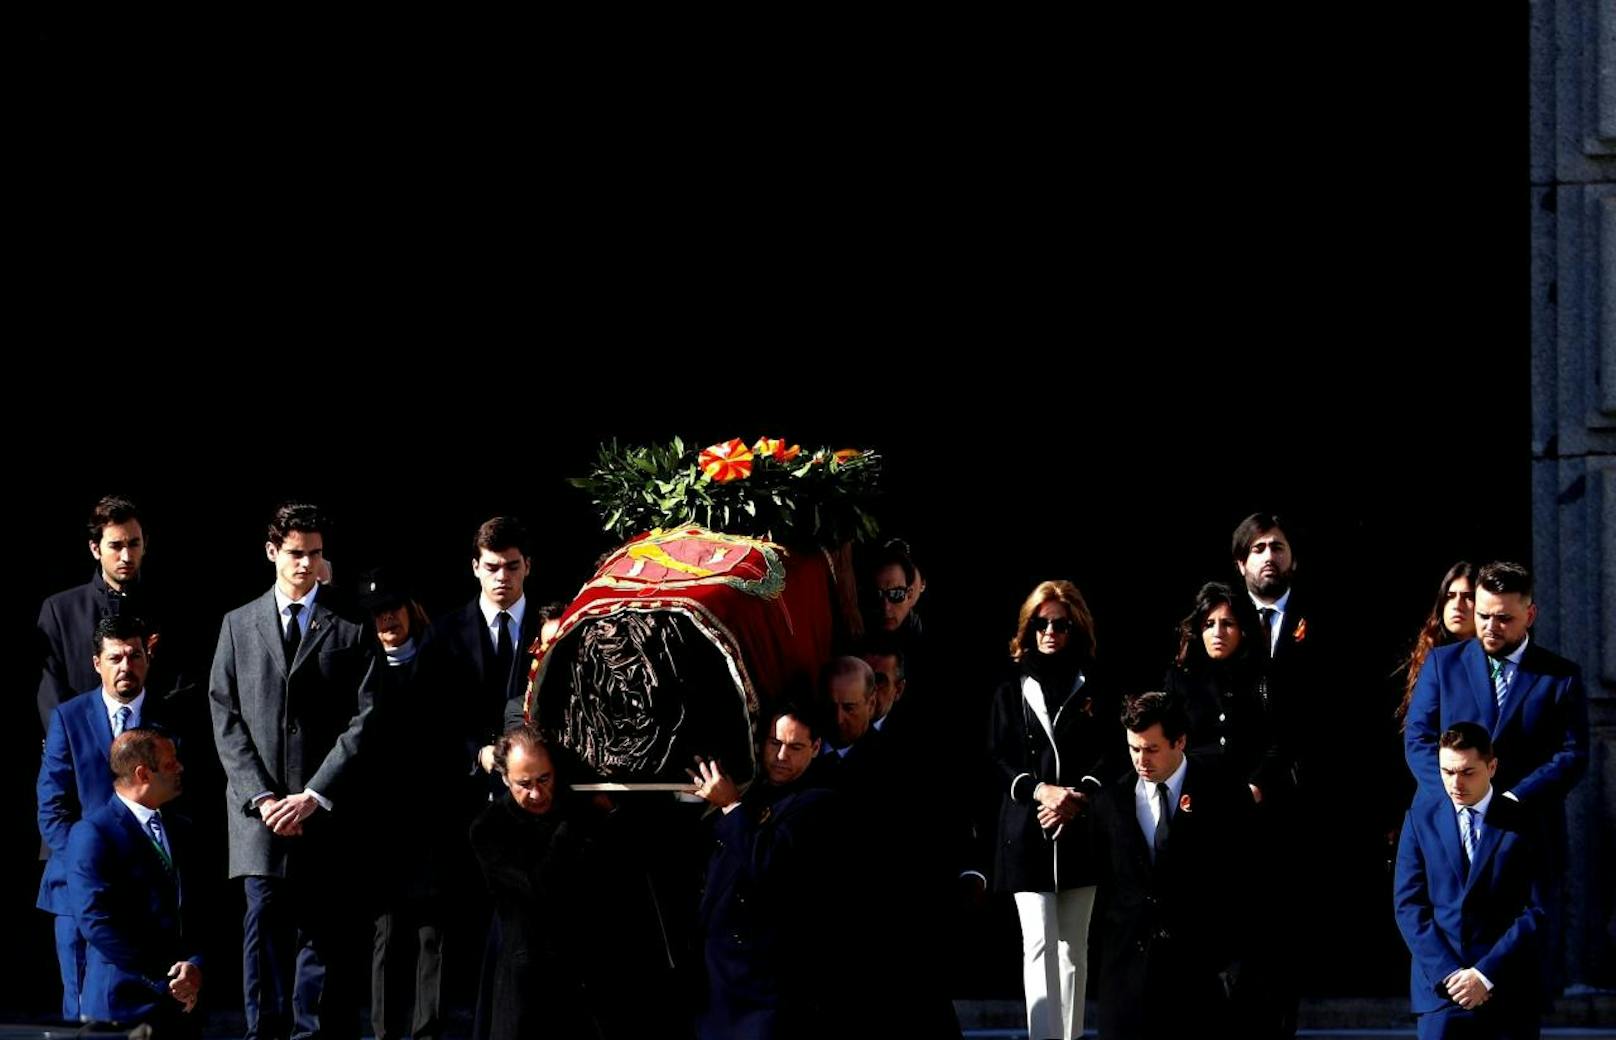 Der spanische Diktator Francisco Franco wurde 45 Jahre nach seinem Tod aus dem Grab geholt.